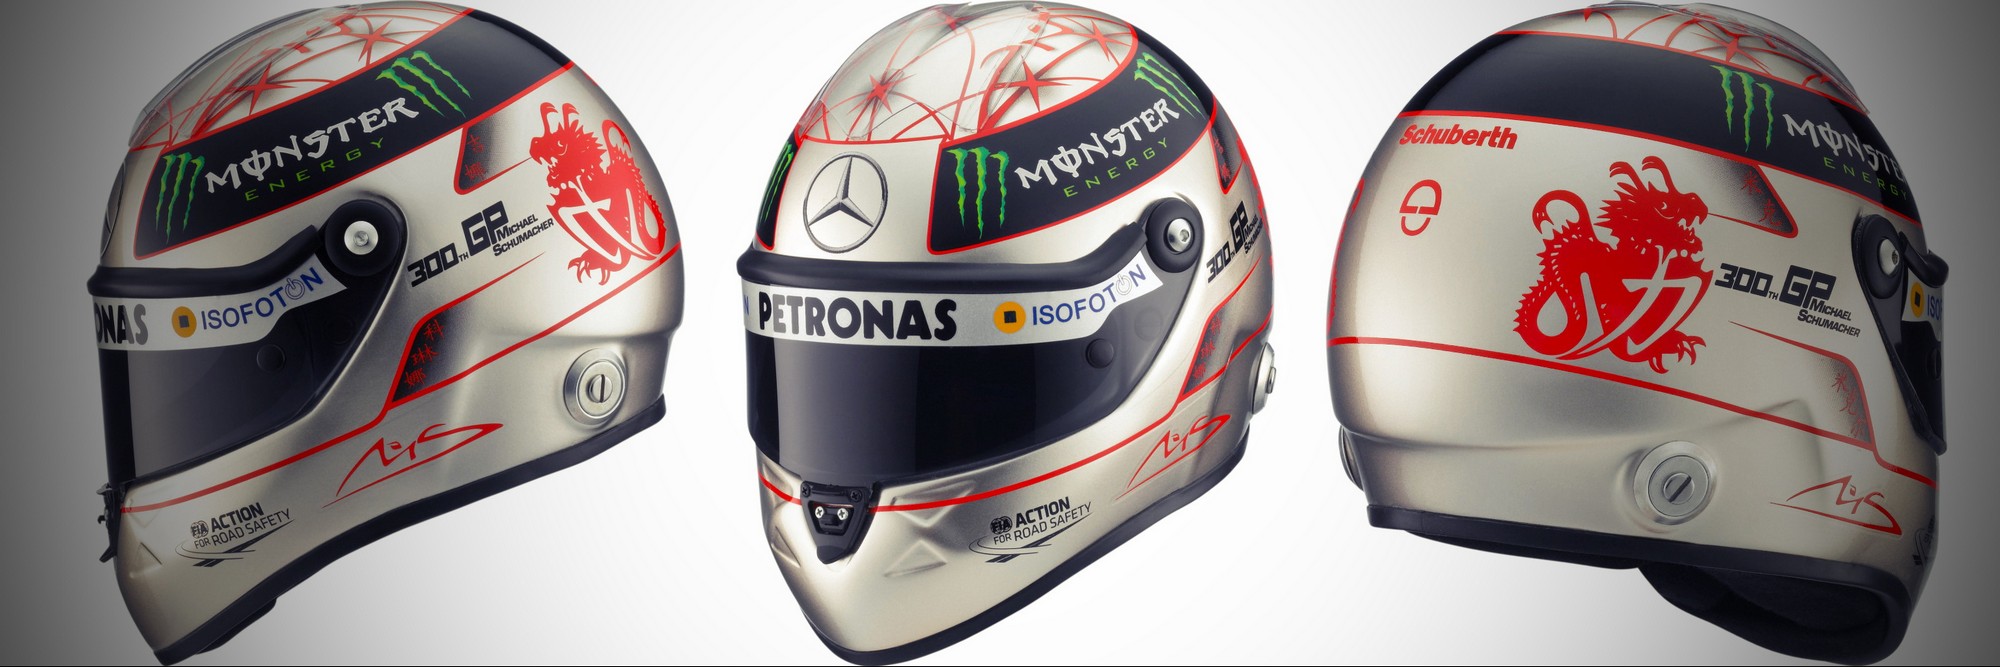 Шлем Михаэля Шумахера на Гран-При Бельгии 2012 года | 2012 Belgian Grand Prix helmet of Michael Schumacher